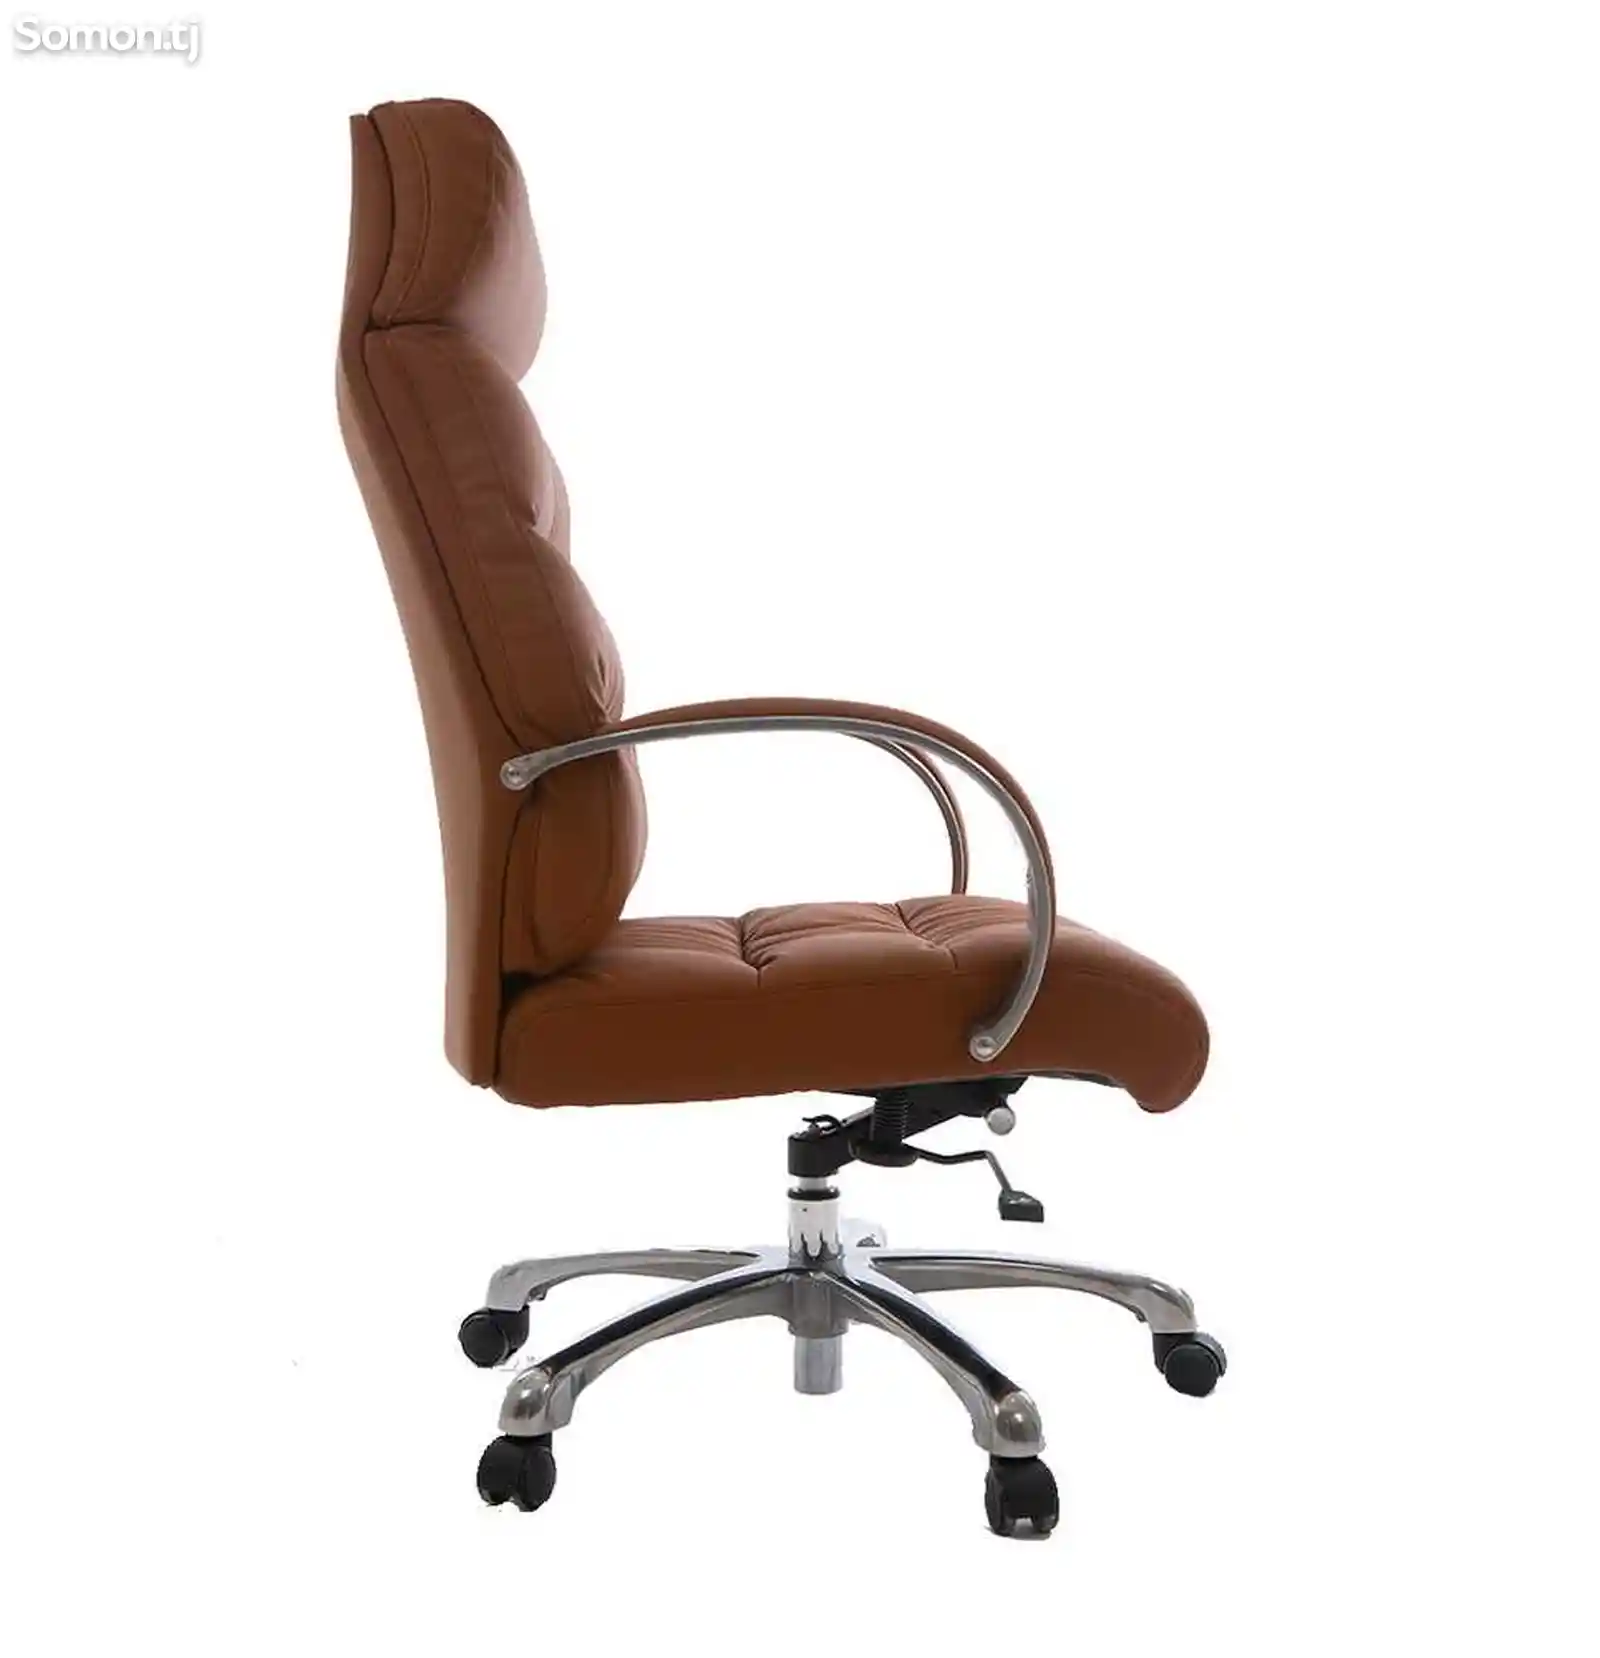 Руководительское кресло Twister brown-3